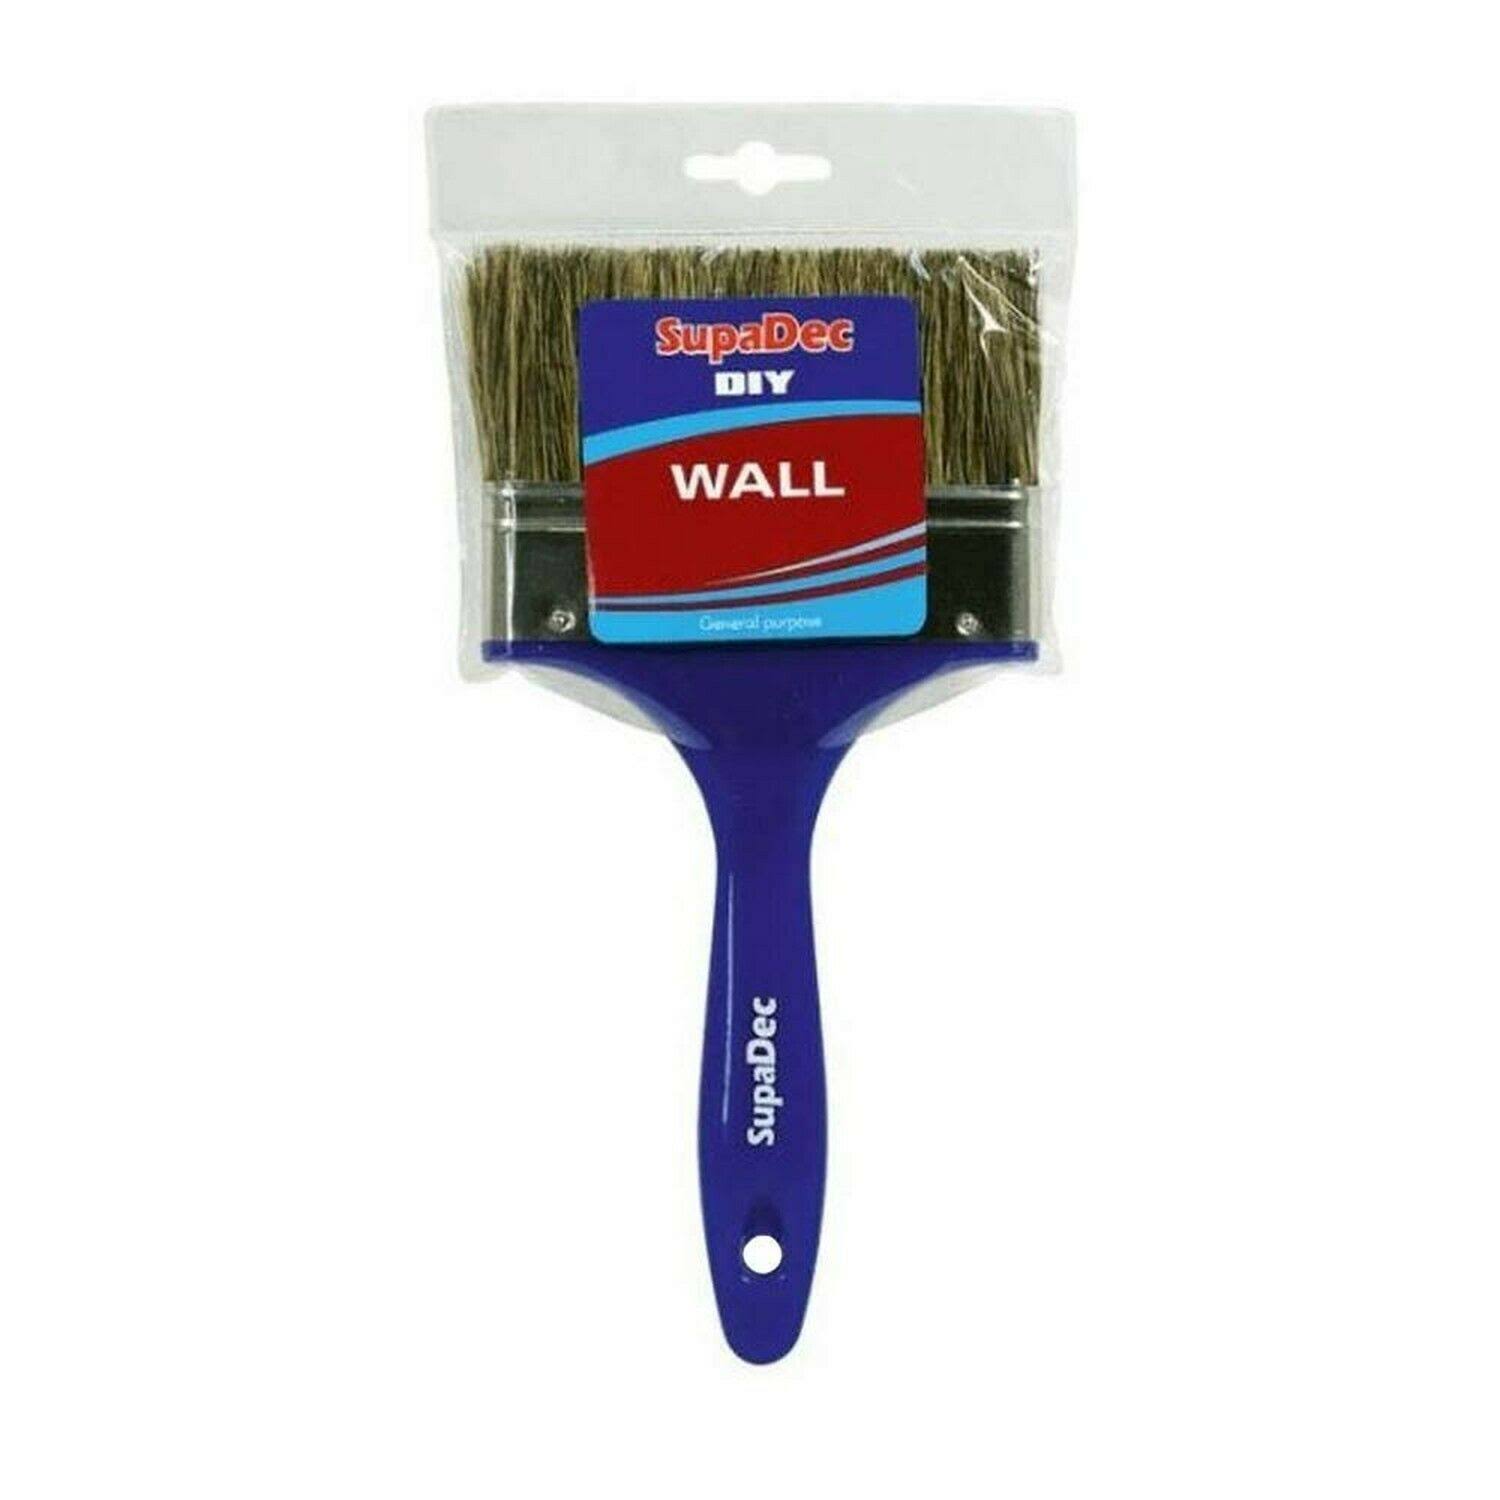 Supadec DIY Wall Brush, 5 /125mm #abc